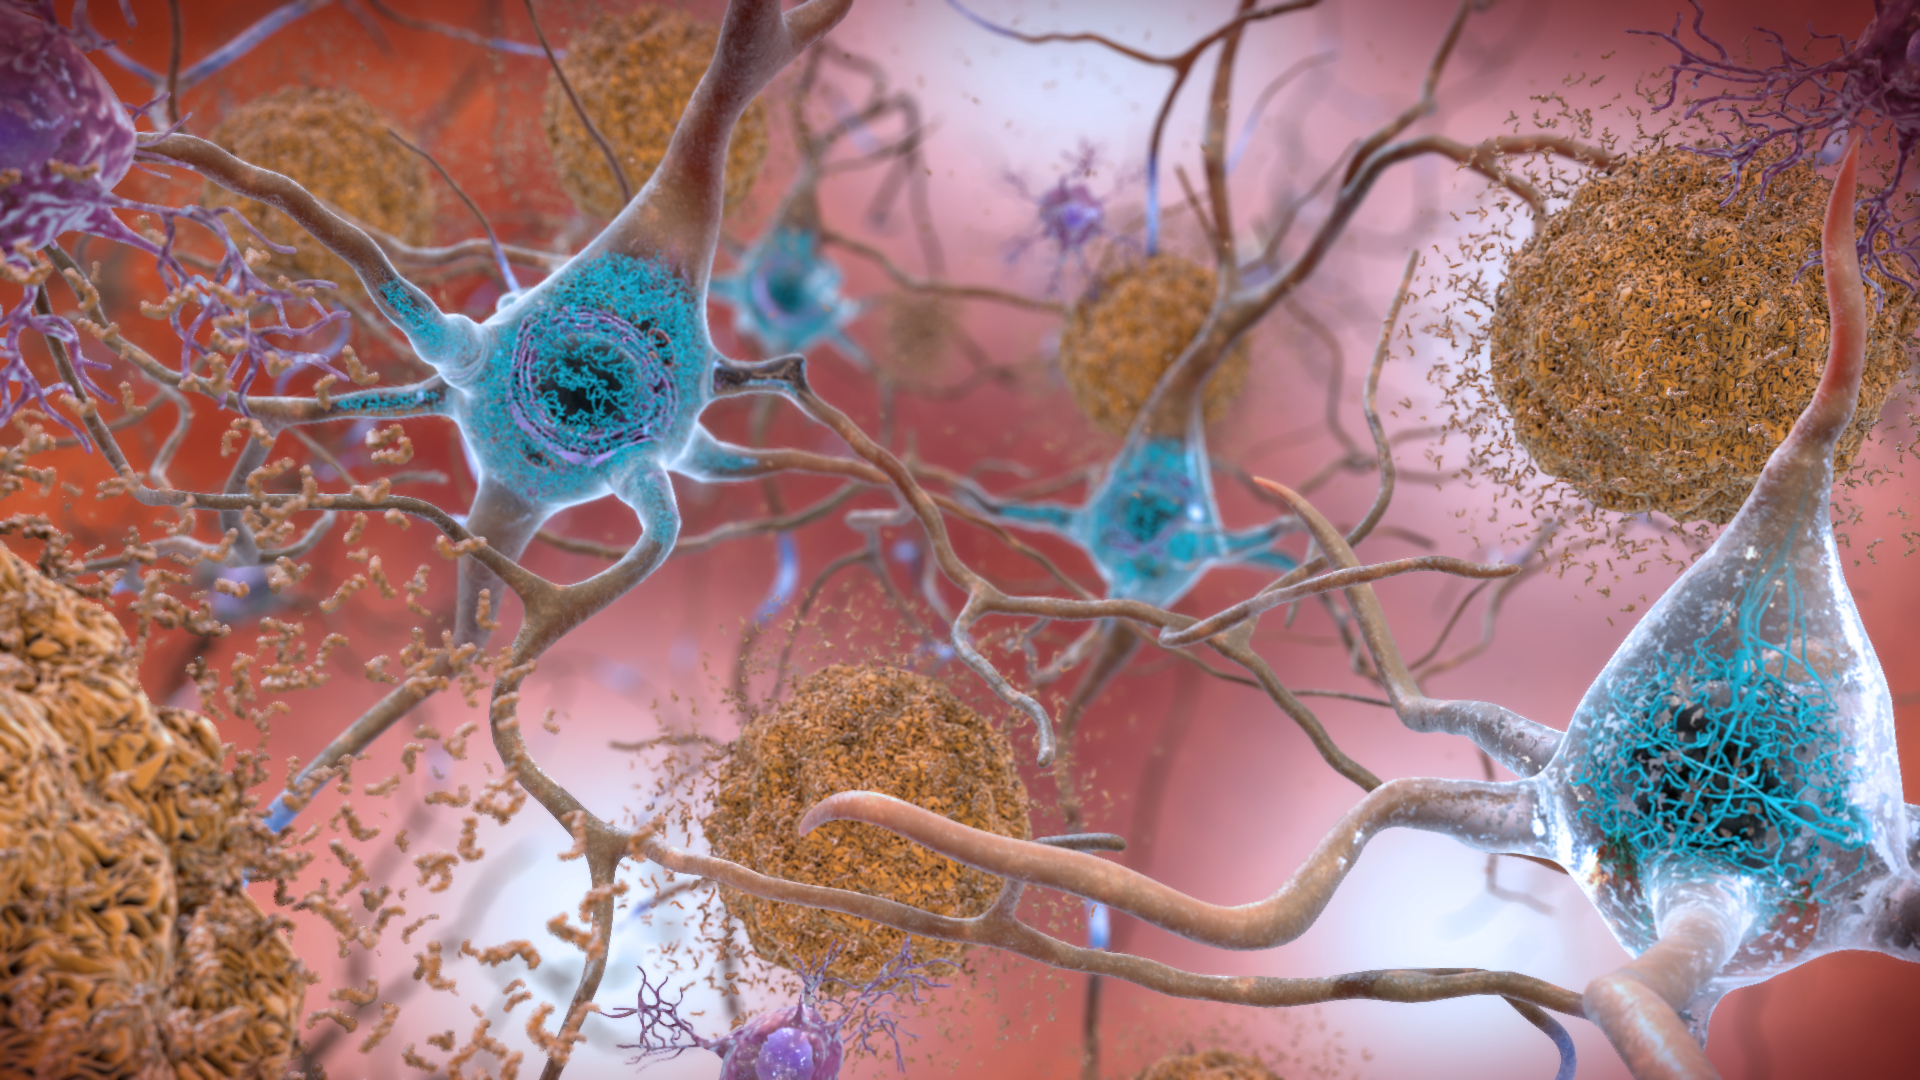 Placque-ridden neurons in a brain affected by Alzheimer's